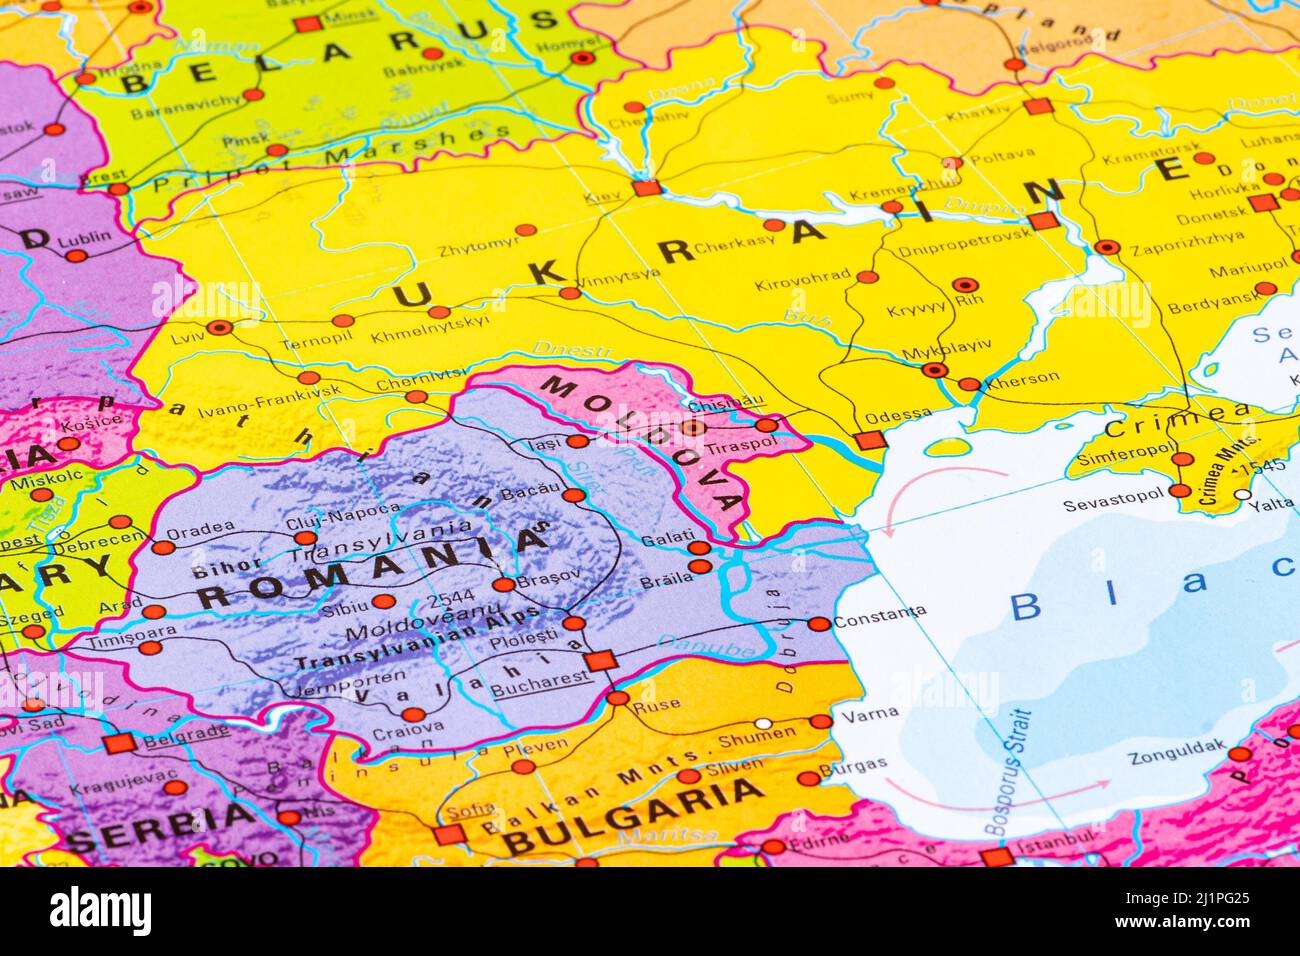 Karte der Republik Moldau, Europas, der Europäischen Union, mit Staatsgrenzen, Hauptstädten, Flüsse und Meere, Hauptstadt Chisinau, aus der Nähe Stockfoto